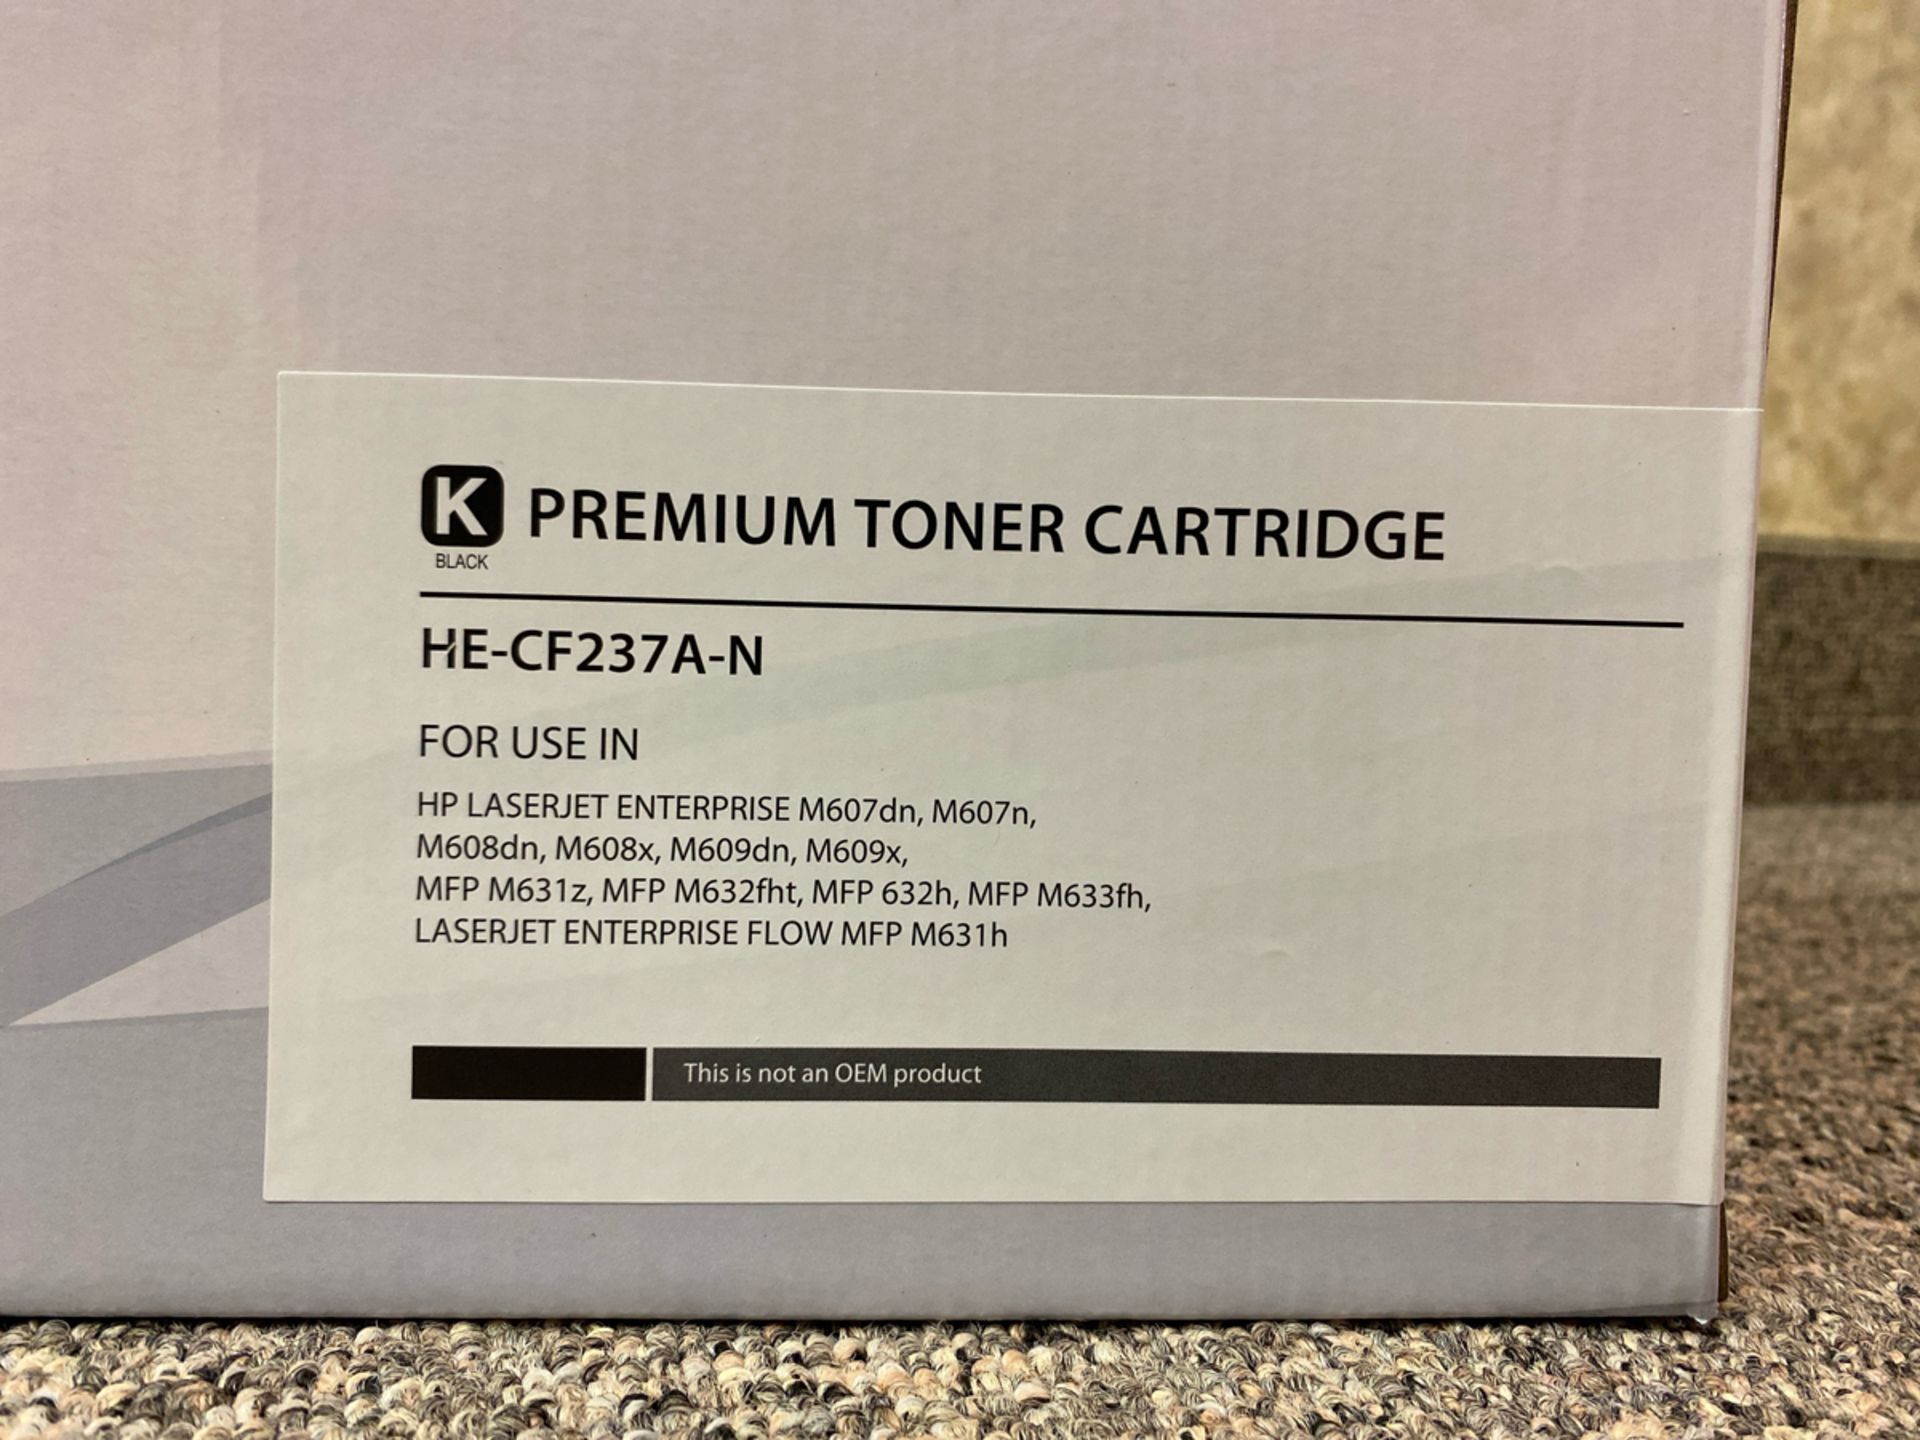 Premium Toner Cartridge HE-CF237A-N Black Toner Cartridge - Image 2 of 2